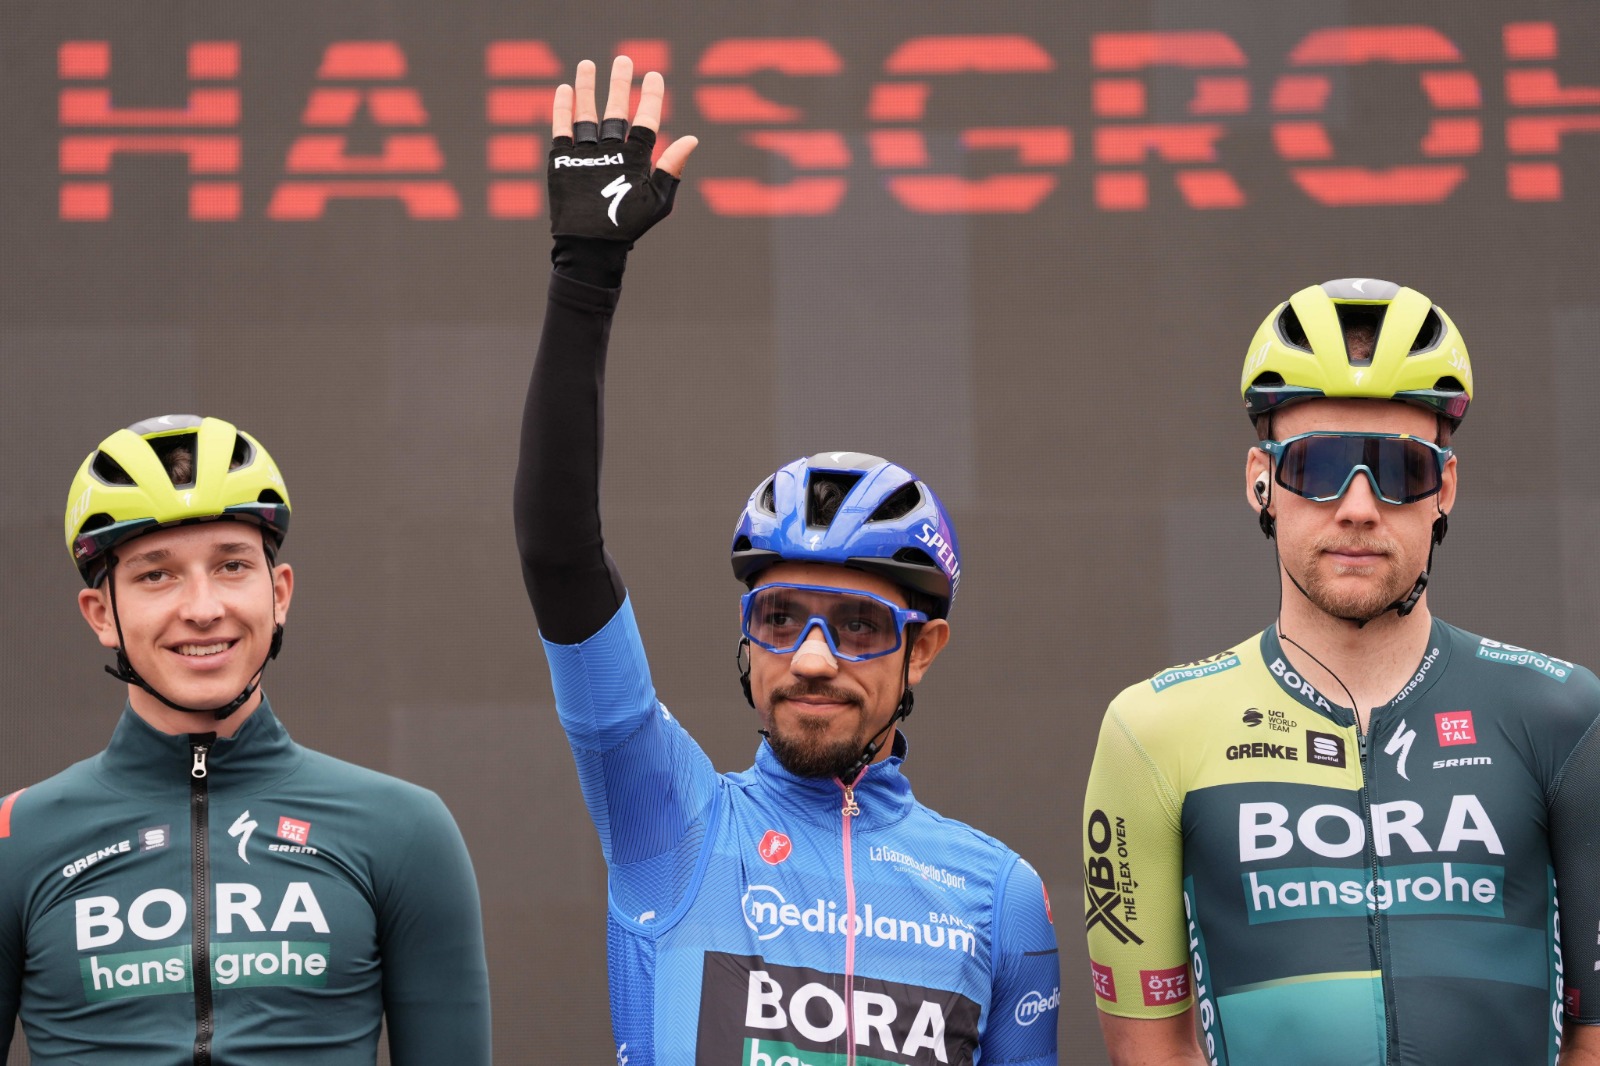 Daniel Martínez sigue en el tercer puesto de la general del Giro de Italia tras la etapa cuatro 